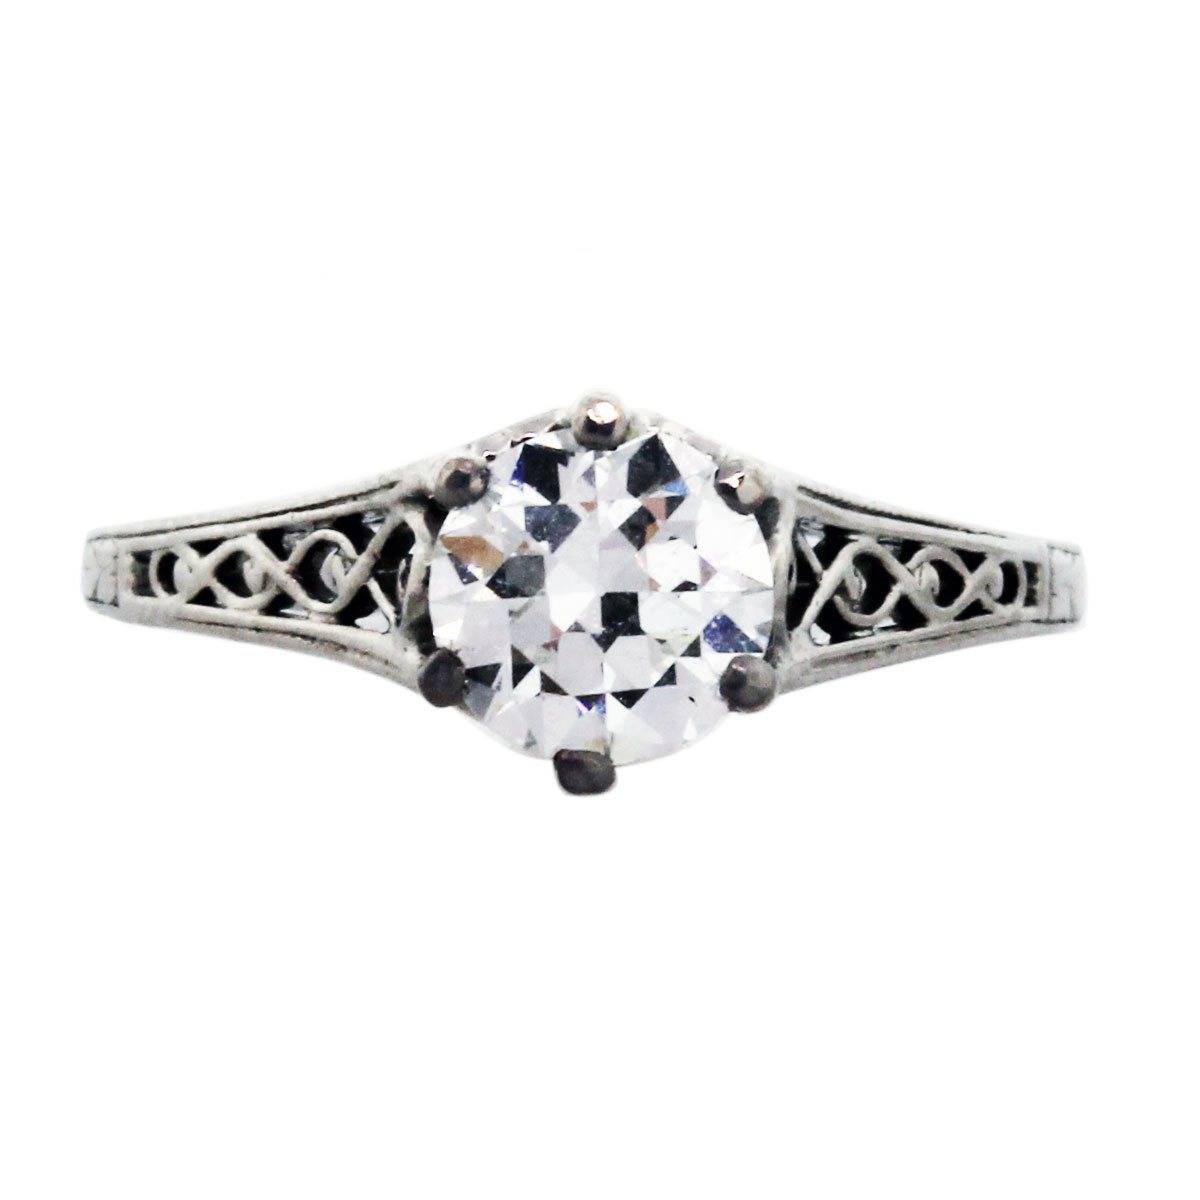 Antique diamond engagement ring set in platinum